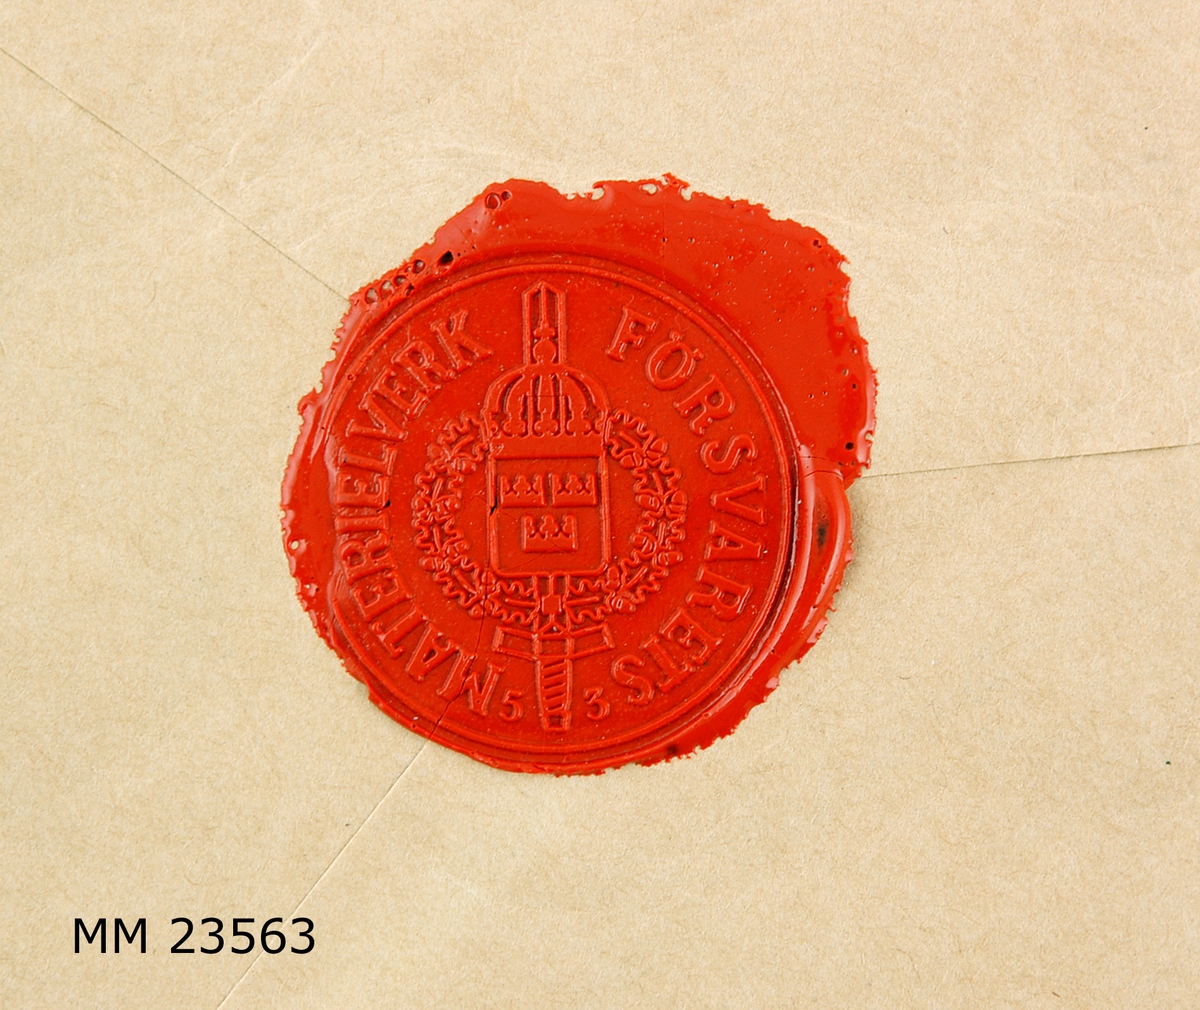 Två stycken runda sigillavtryck i rött lack på baksidan av brunt kuvert. I mitten av sigillet , krönt sköld med tre kronor liggande på ett svärd samt omgivet av serafimerkedja. Längs kanten text: " FÖRSVARETS MATERIELVERK " I det ena avtrycket står siffrorna " 53 " i det andra, siffrorna " 39 ". På kuvertets framsida tryckt text: " Assureras för Ettusen ( 1000 ) kronor. ( Texten är understruken ) . Tjänste, Krigsmakten, Försvarets Bok- och blankettförråd, 172 20 SUNDBYBERG. Liten röd rektangulär påklistrad lapp med text: " V  Sundbyberg 1 Nr 740 " Adresserat till: " Marinmuséet och modellkammaren, 371 00 KARLSKRONA. Dessutom skrivet med blå kulspetspenna: " 530, 5, 35 "